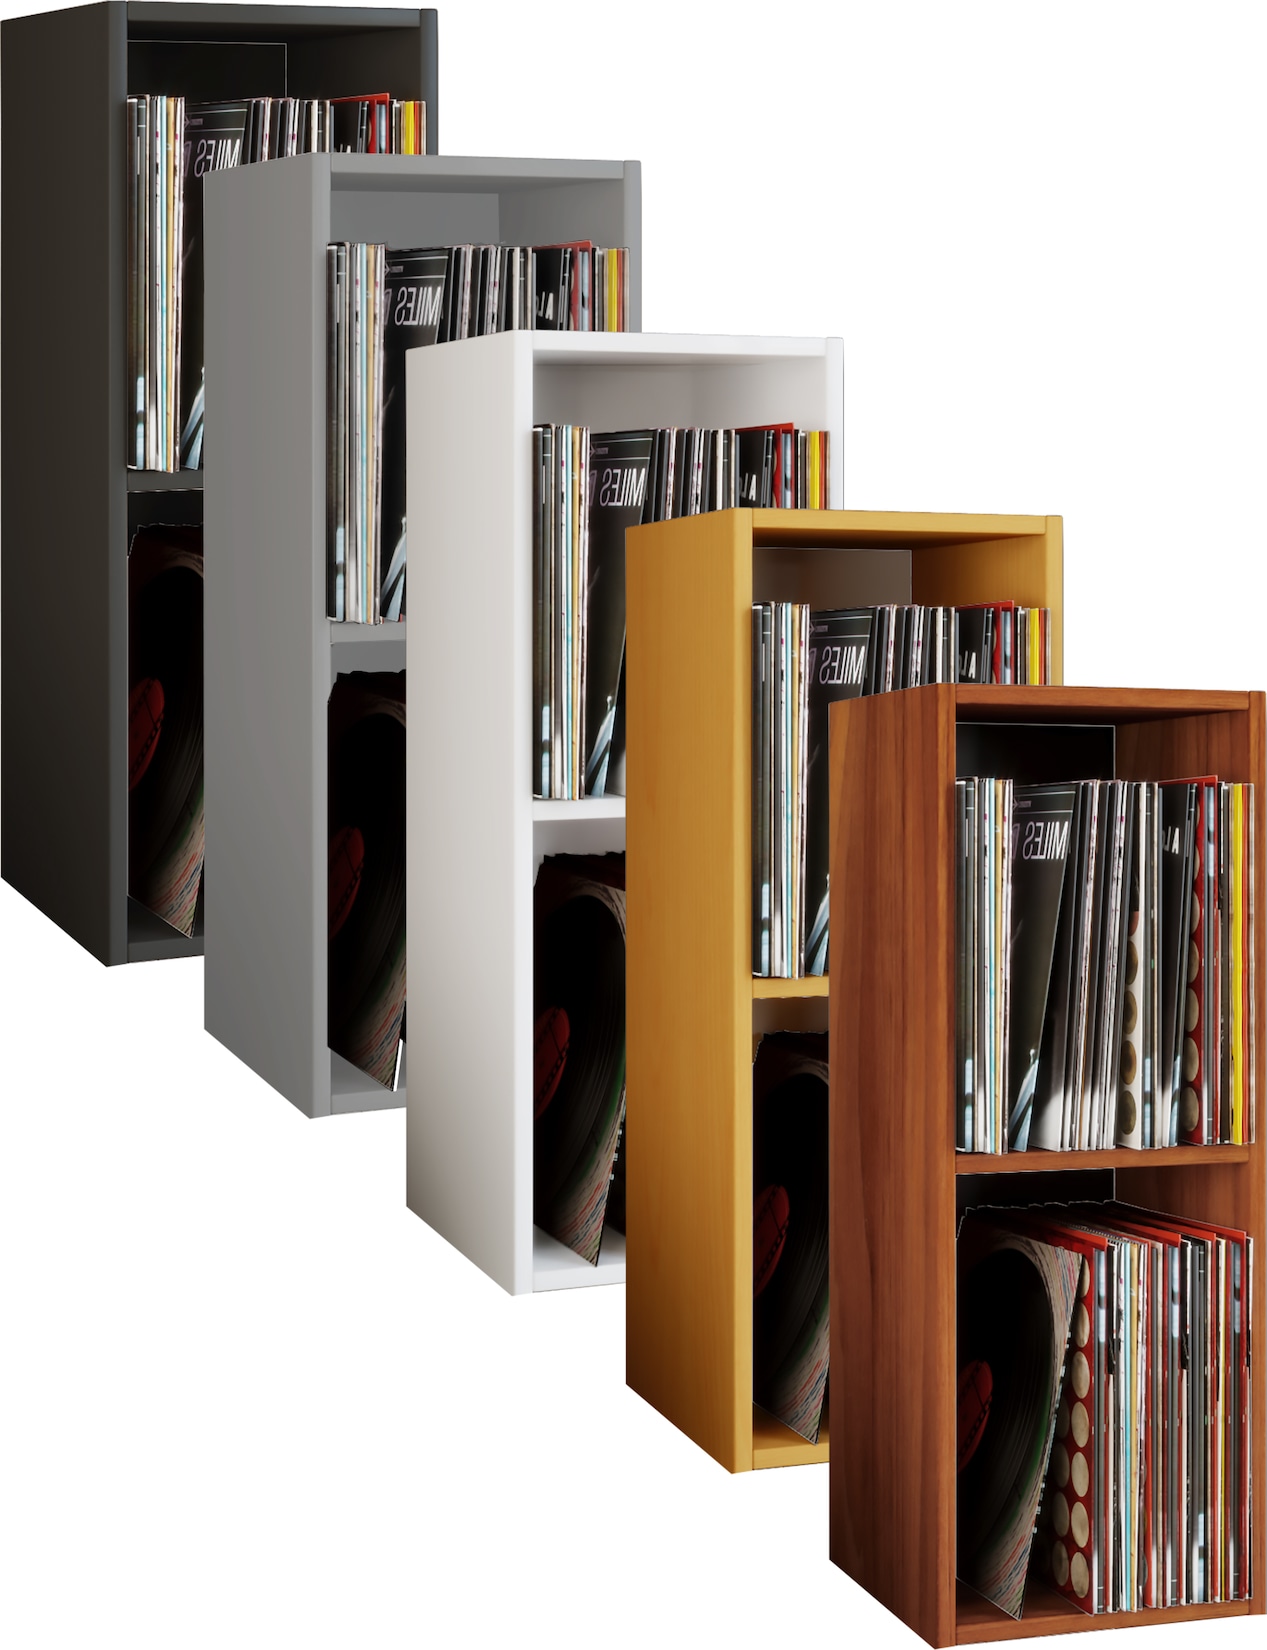 VCM Holz Schallplatten LP Stand Regal Archivierung Ständer Aufbewahrung Platto 2fach